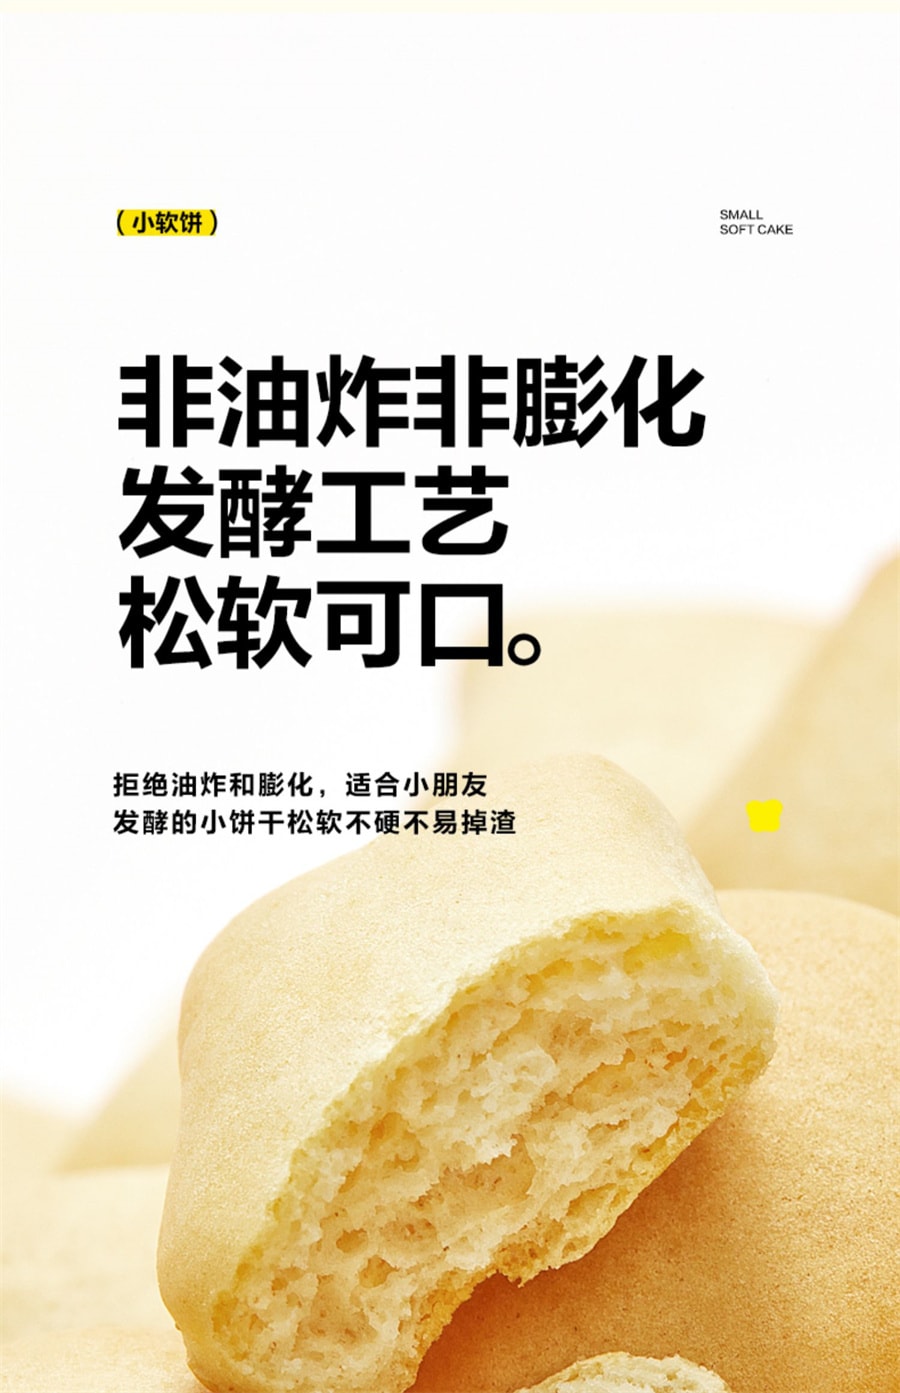 【中国直邮】窝小芽  高钙奶香小软饼造型萌趣软式饼干松软易咀嚼   小馒头80g/盒